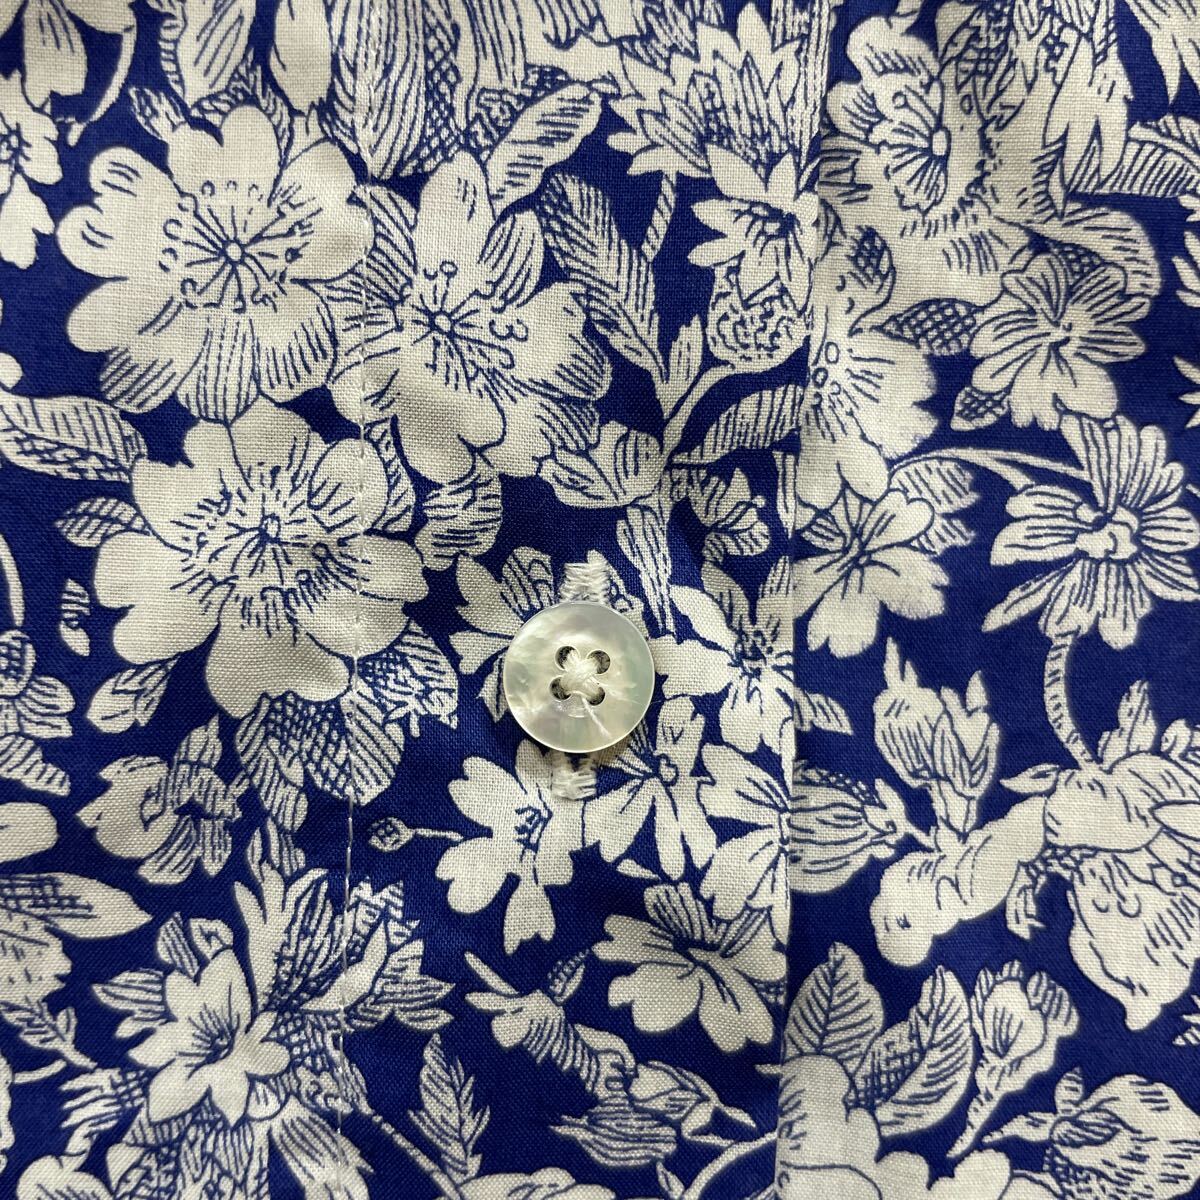 303 Maker's Shirt 鎌倉 メーカーズシャツ カマクラ LIBERTY 花柄 スタンドカラー ノースリーブ シャツ ブラウス サイズ38 薄地 40423W_画像5